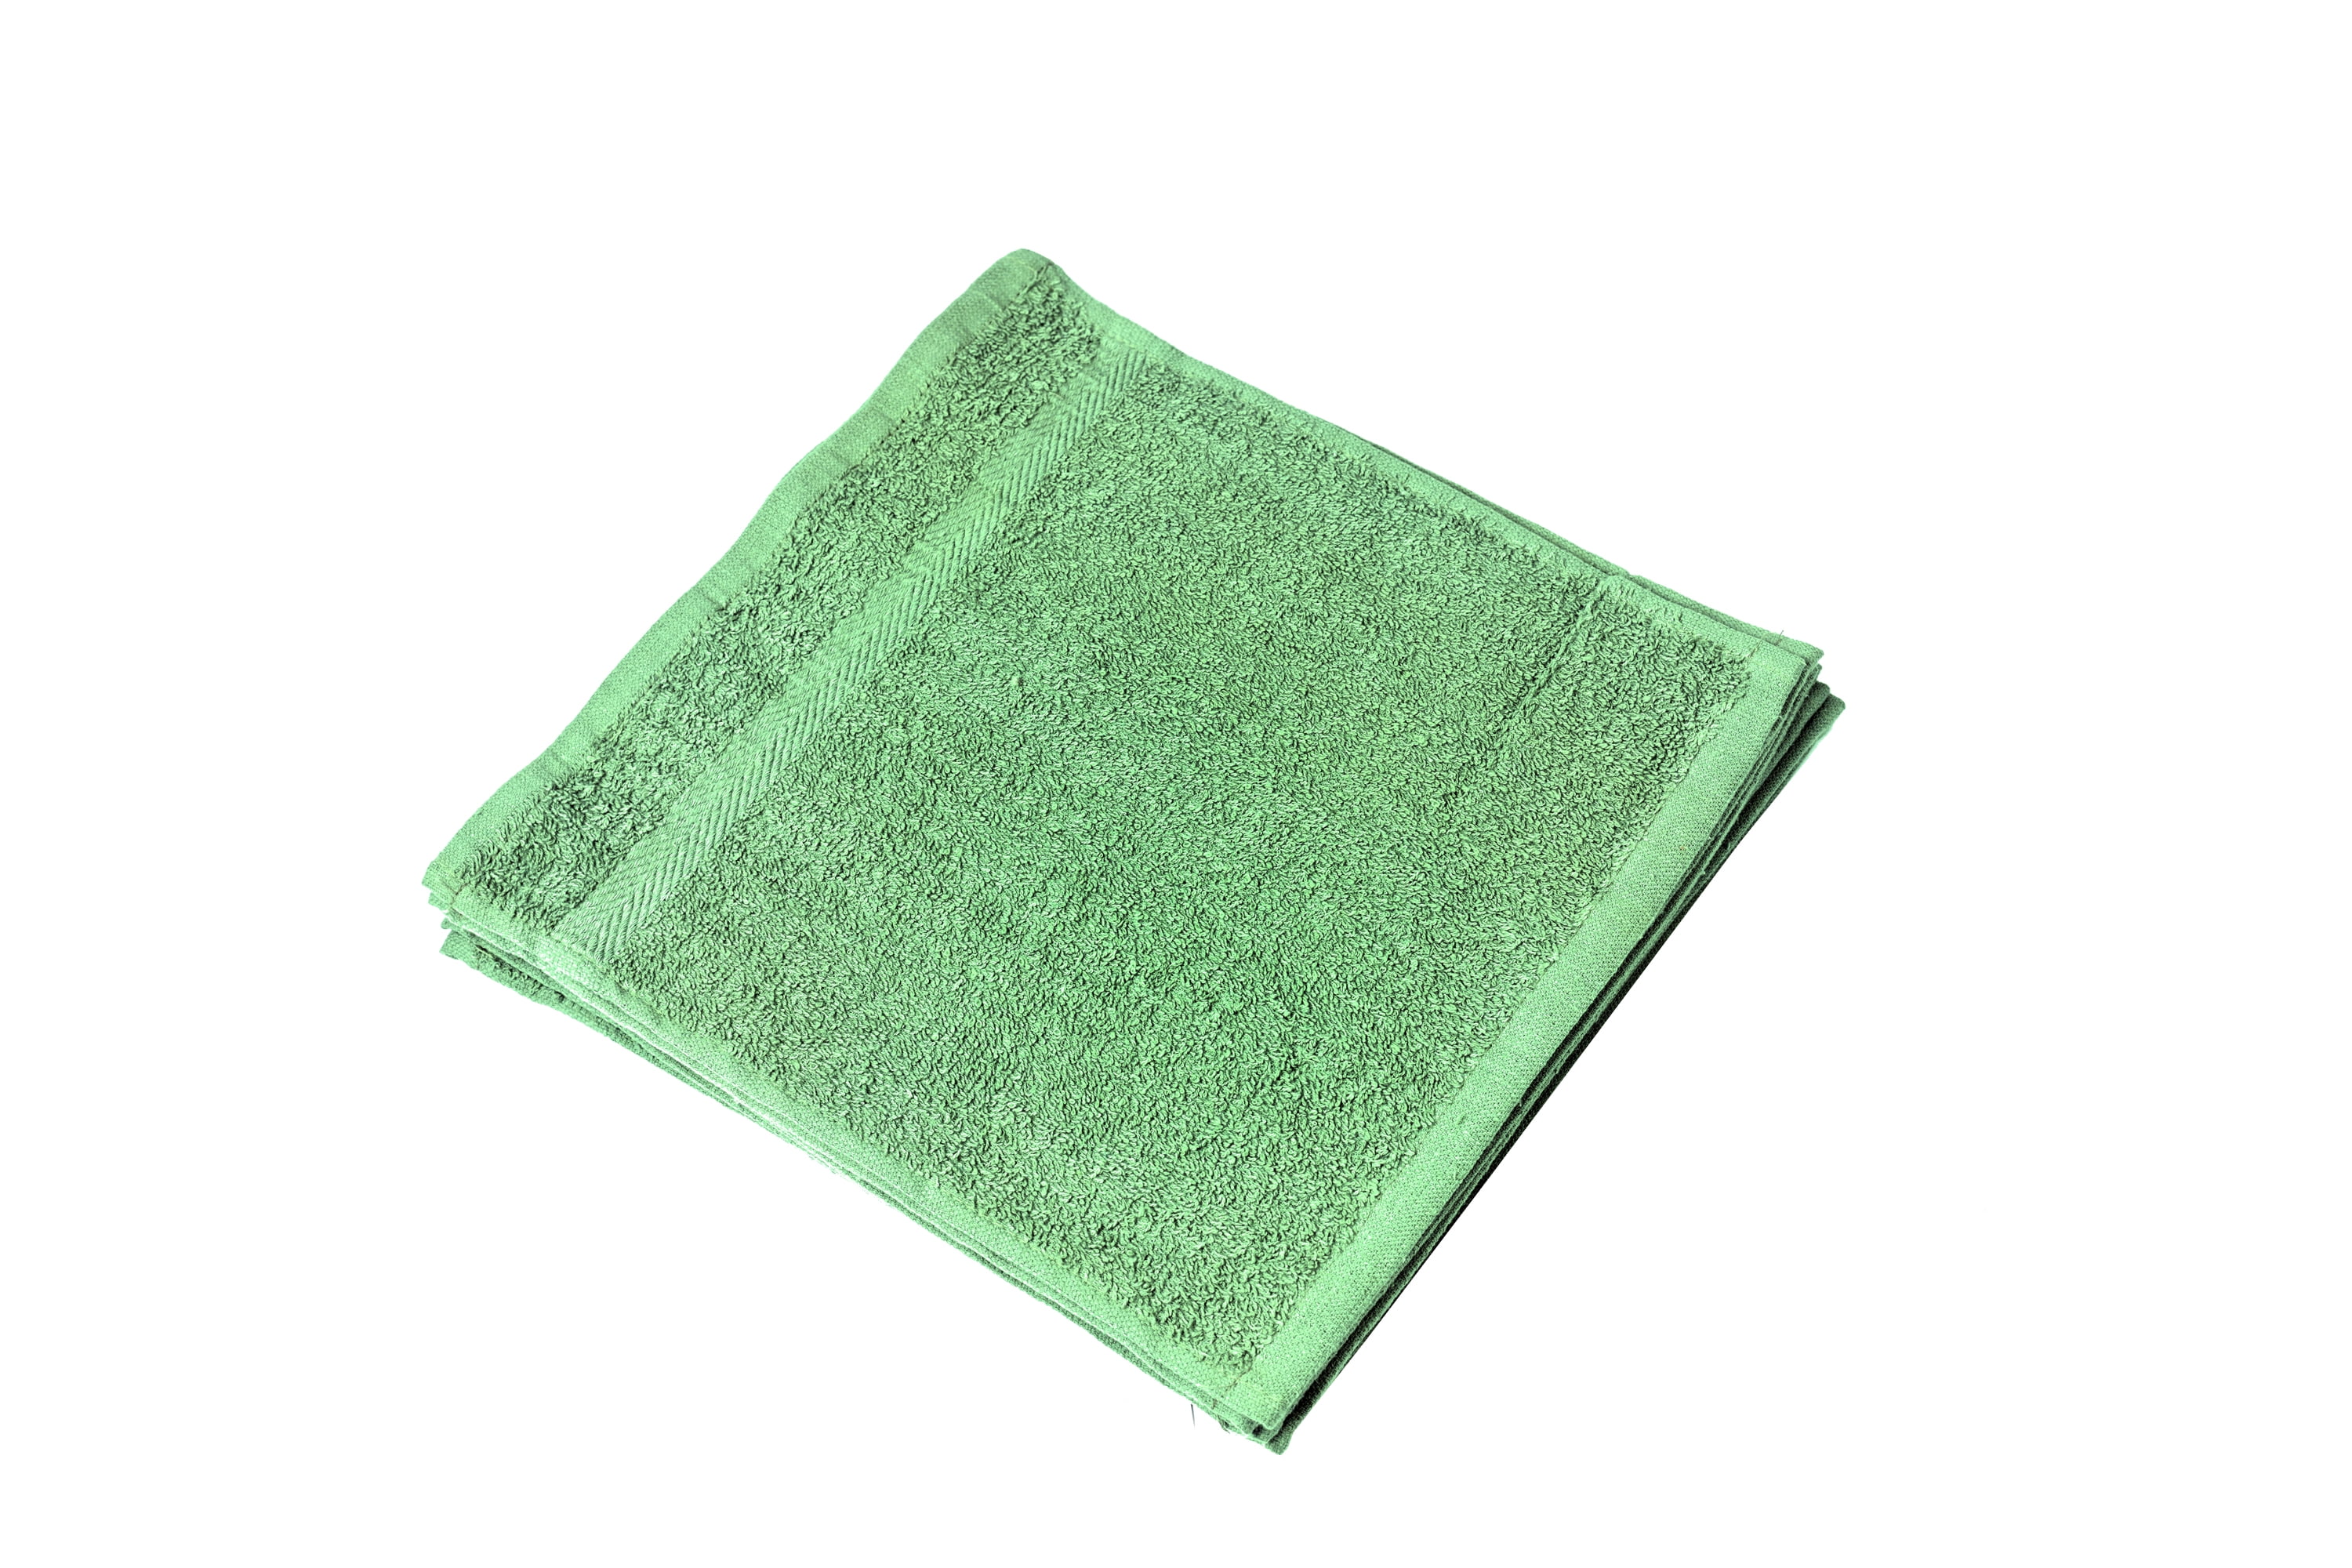 12x12 Premium Color Washcloths - 1 lb/dz - Hunter Green